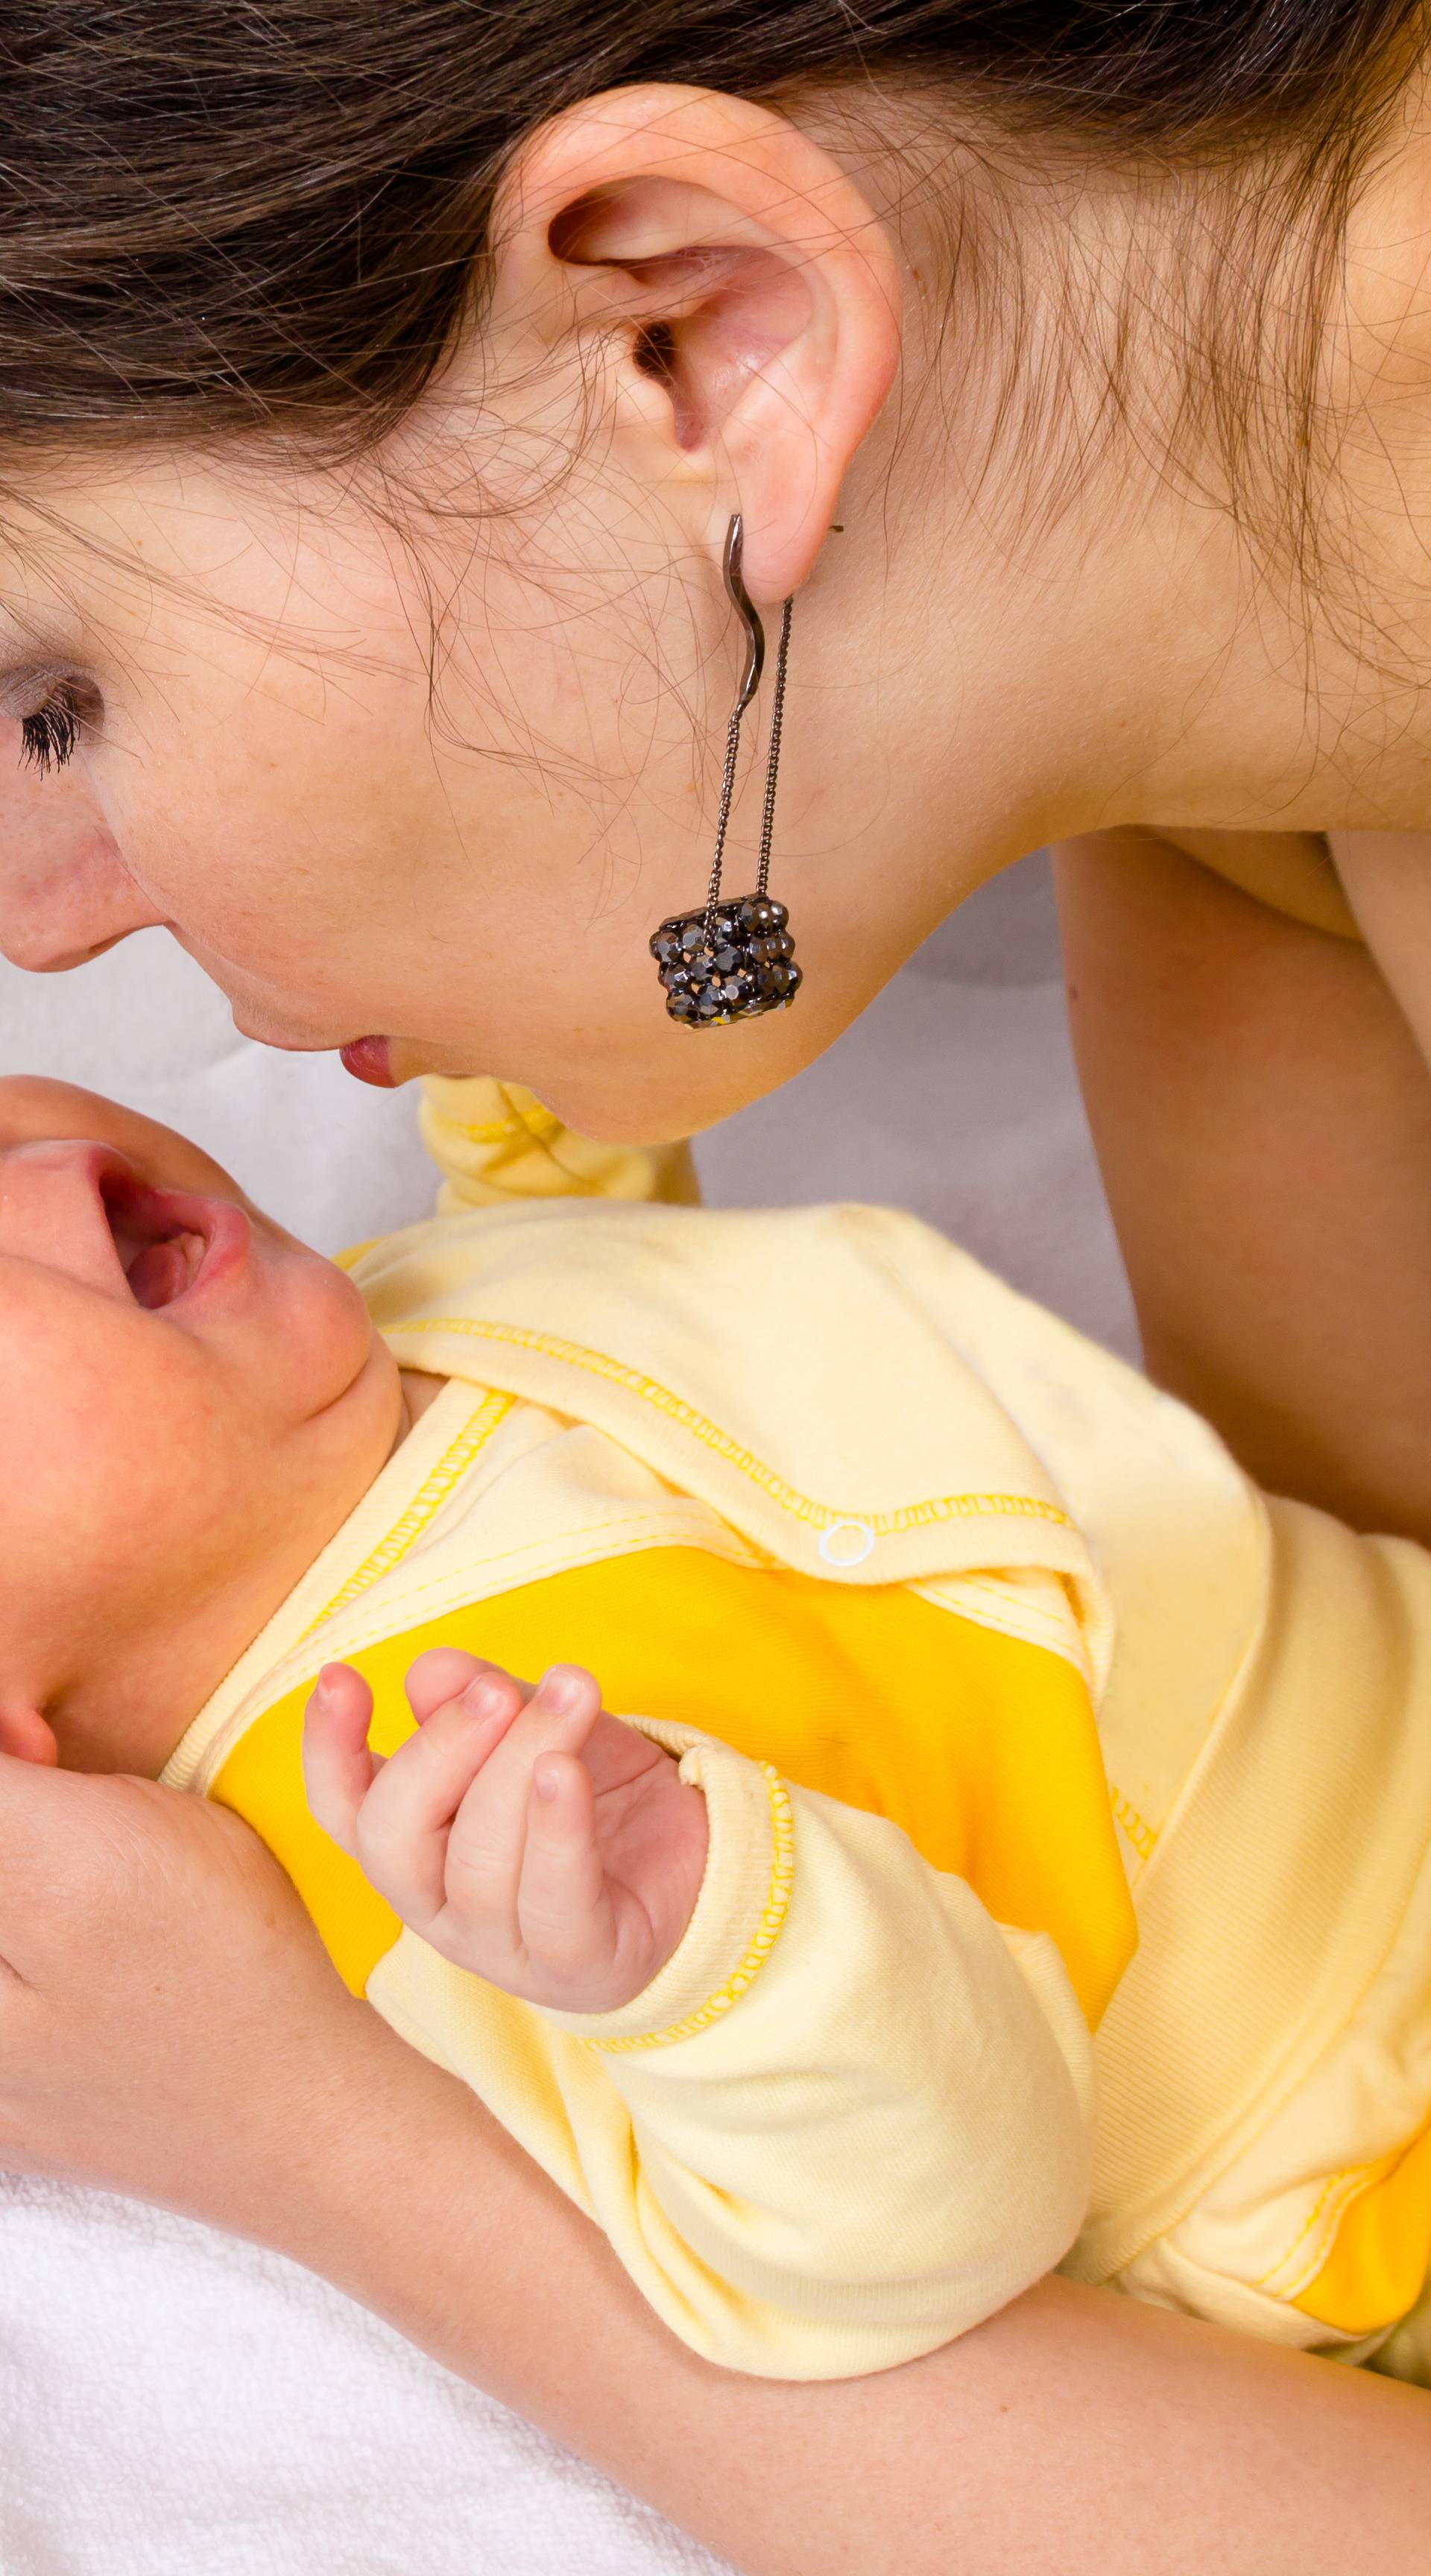 Bebin plač dira nas u mozak  i mijenja razinu hormona u tijelu